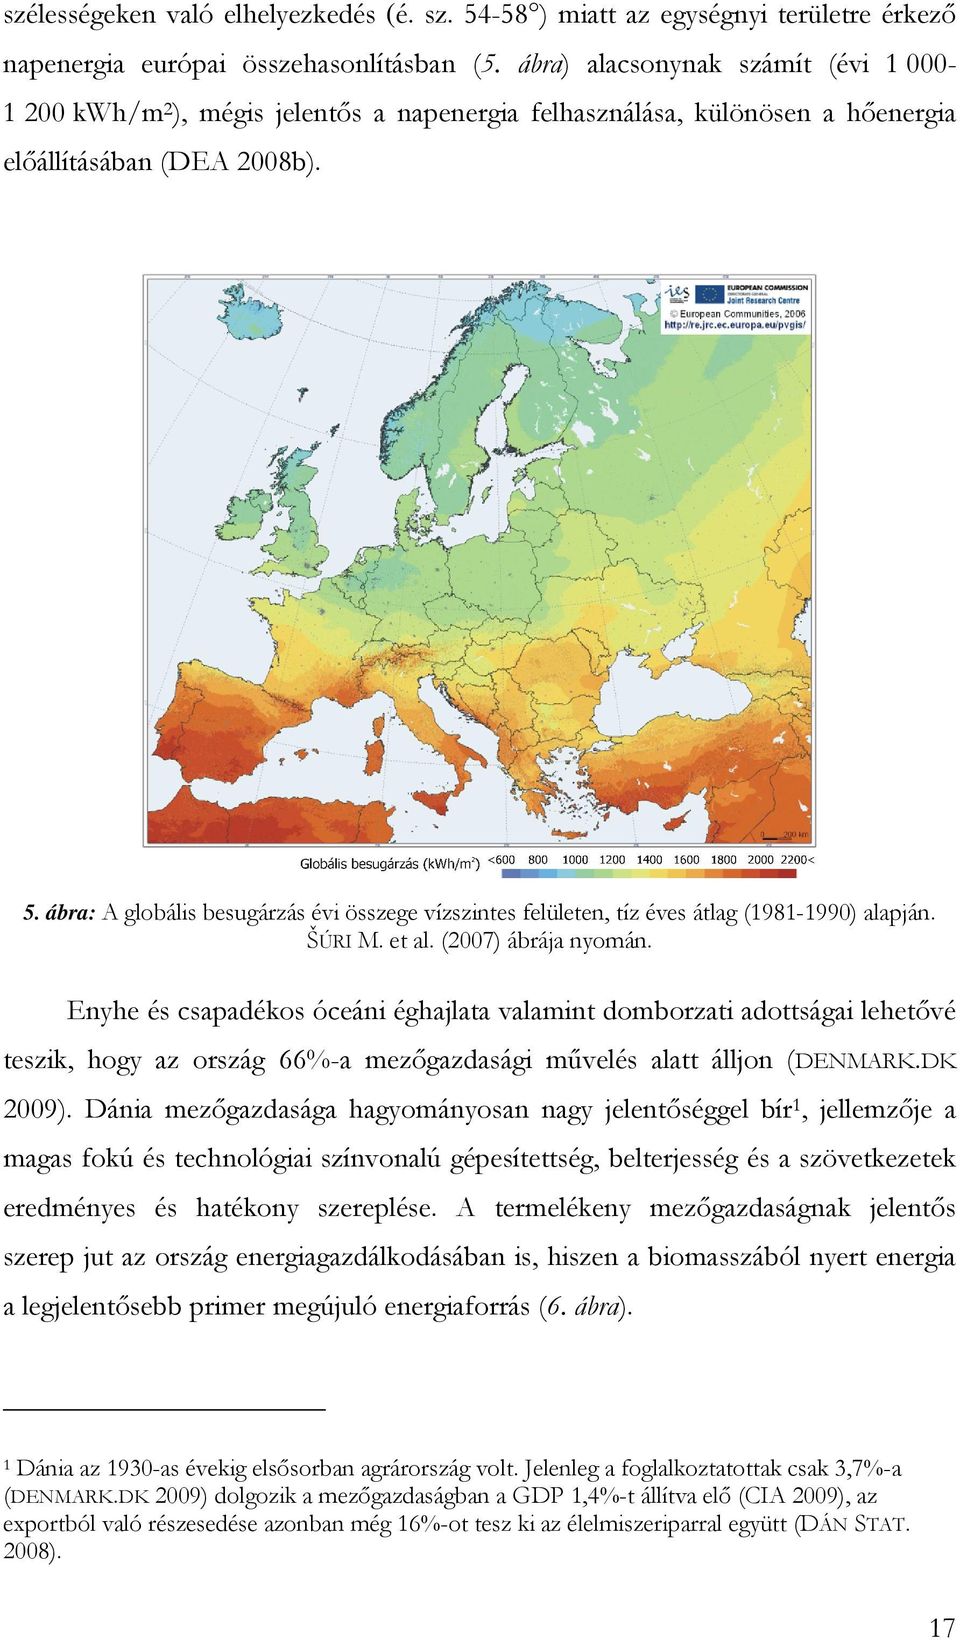 ábra: A globális besugárzás évi összege vízszintes felületen, tíz éves átlag (1981-1990) alapján. ŠÚRI M. et al. (2007) ábrája nyomán.